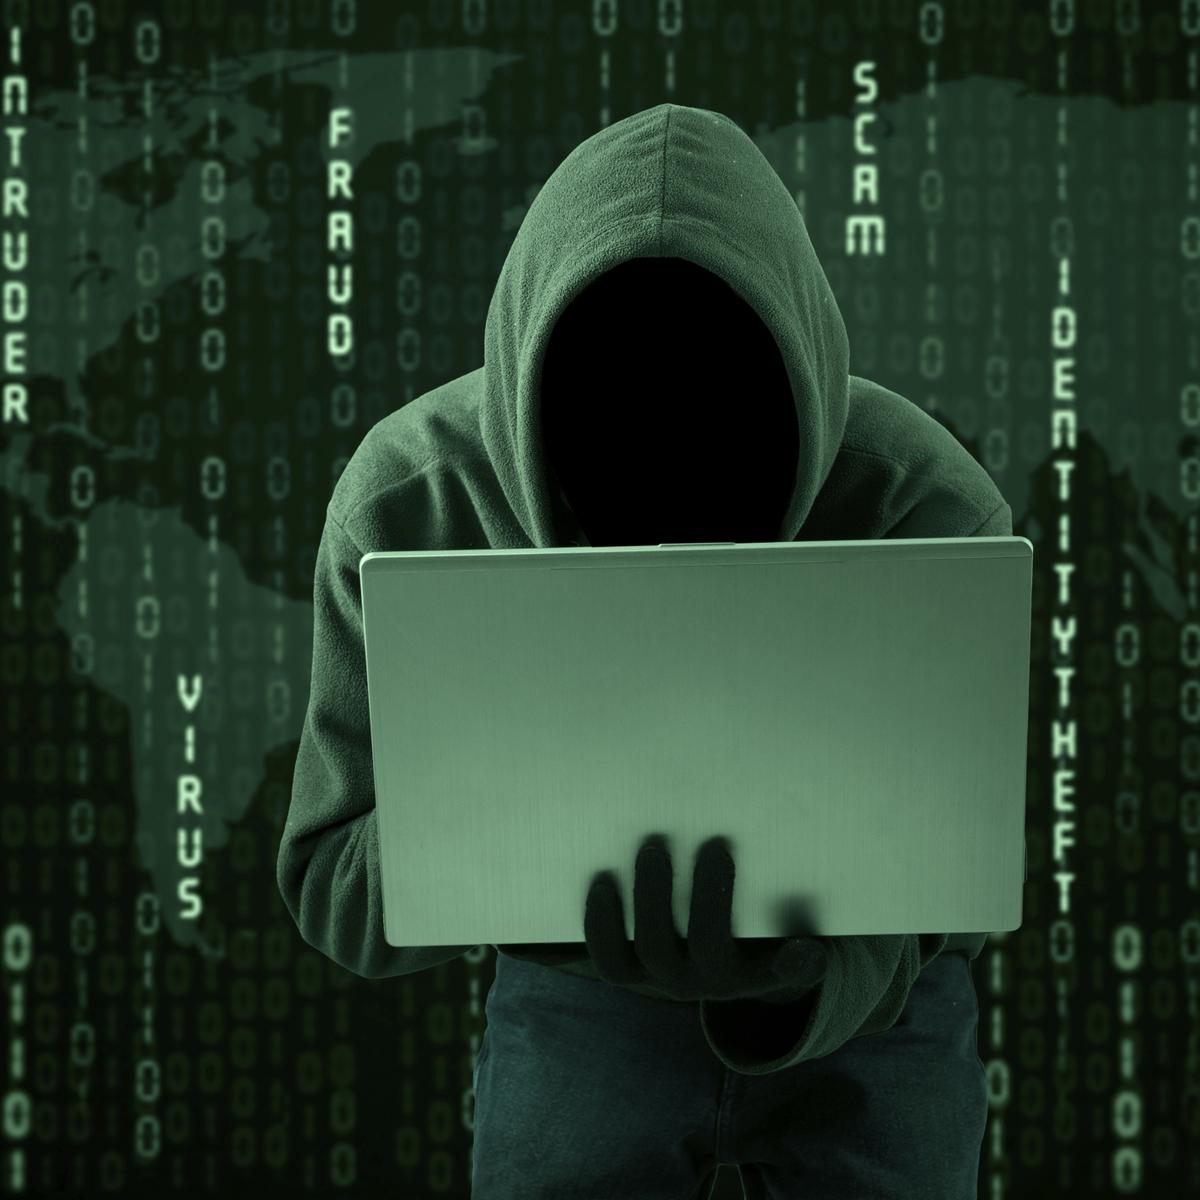 065914800 1447413778 hacker hacking dark hoodie